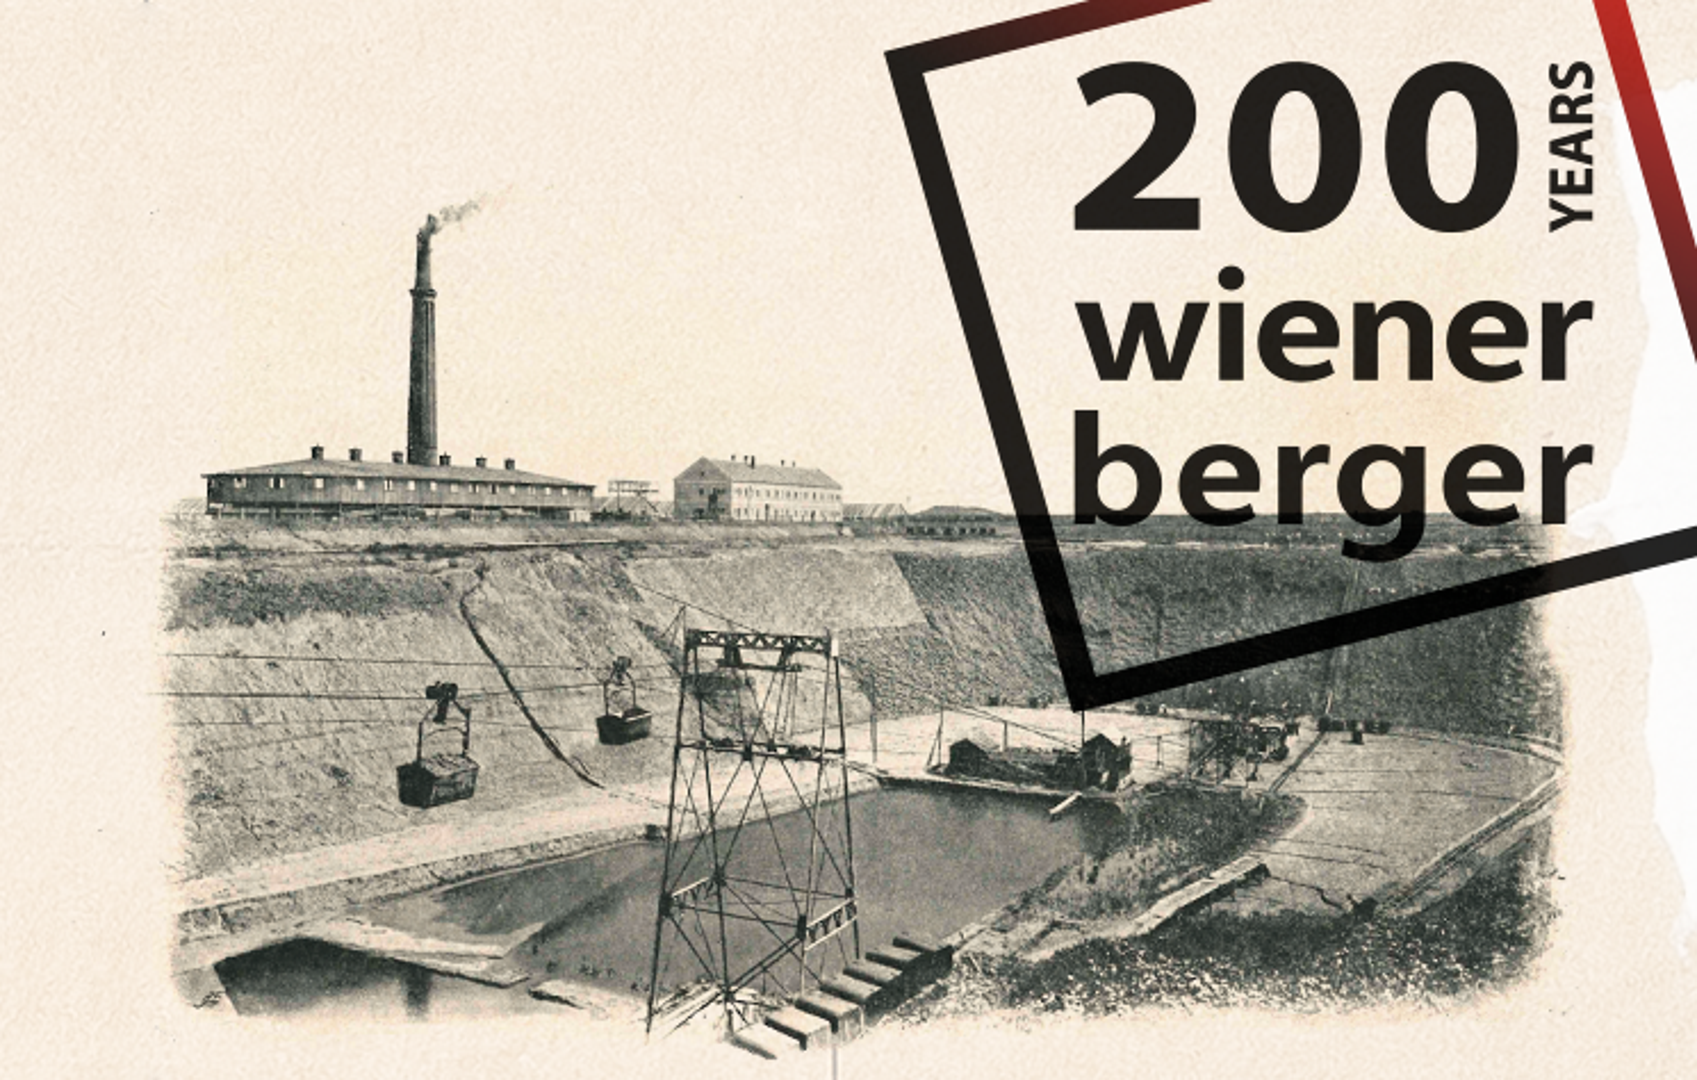 Priča o uspjehu jedne od najstarijih tvrtki u Europi 200 ponosnih godina Wienerbergera